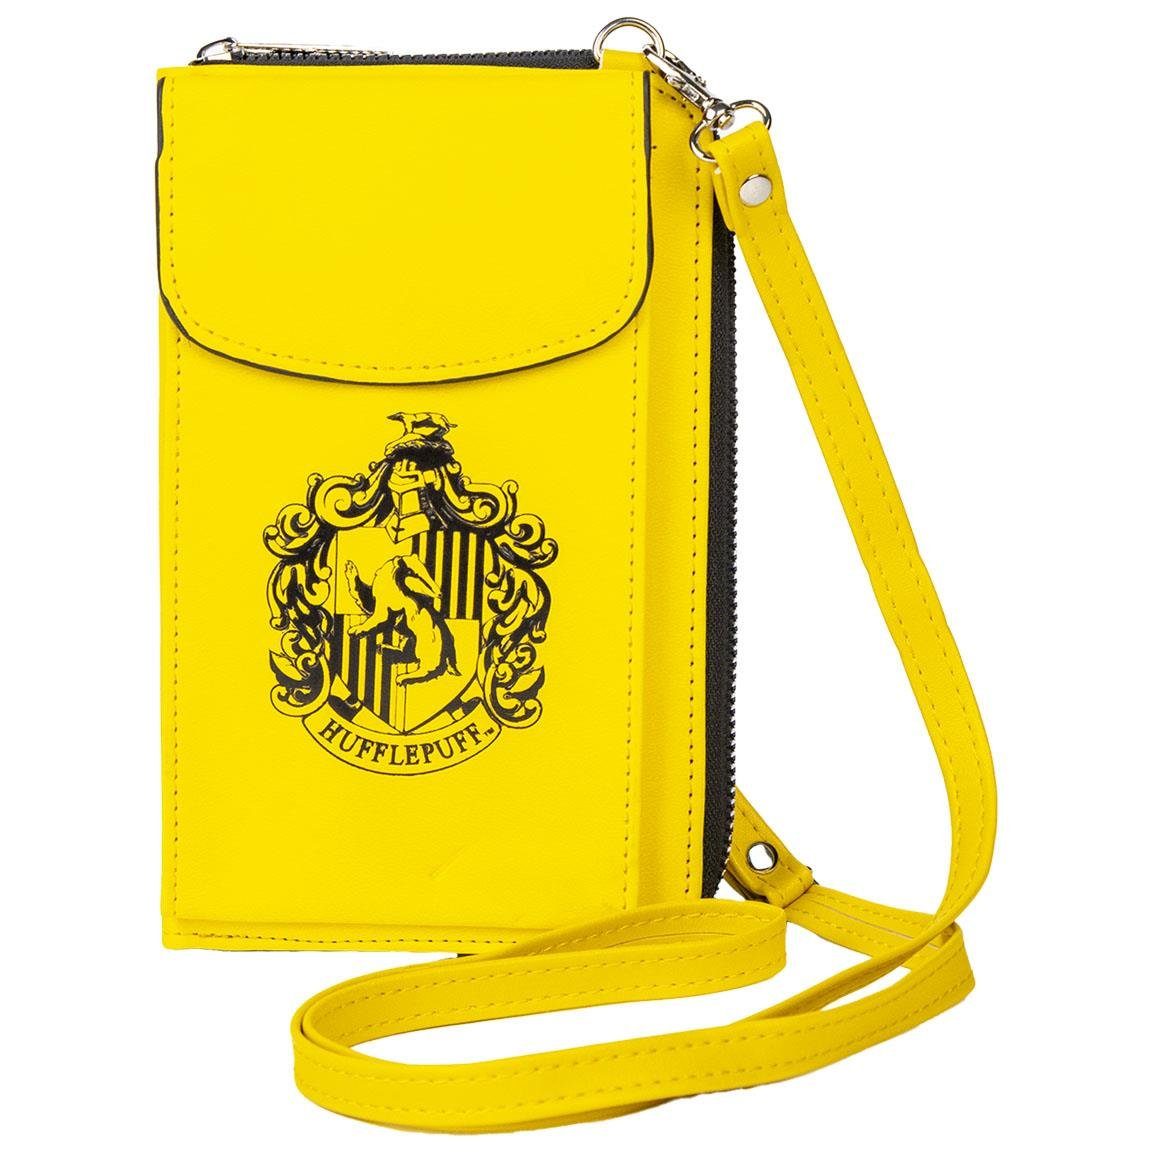 Harry Potter Umhängetasche Harry Potter Umhängetasche für Geld und Handy,  Der Geldbeutel verfügt über eine geräumige Haupttasche mit Reißverschluss